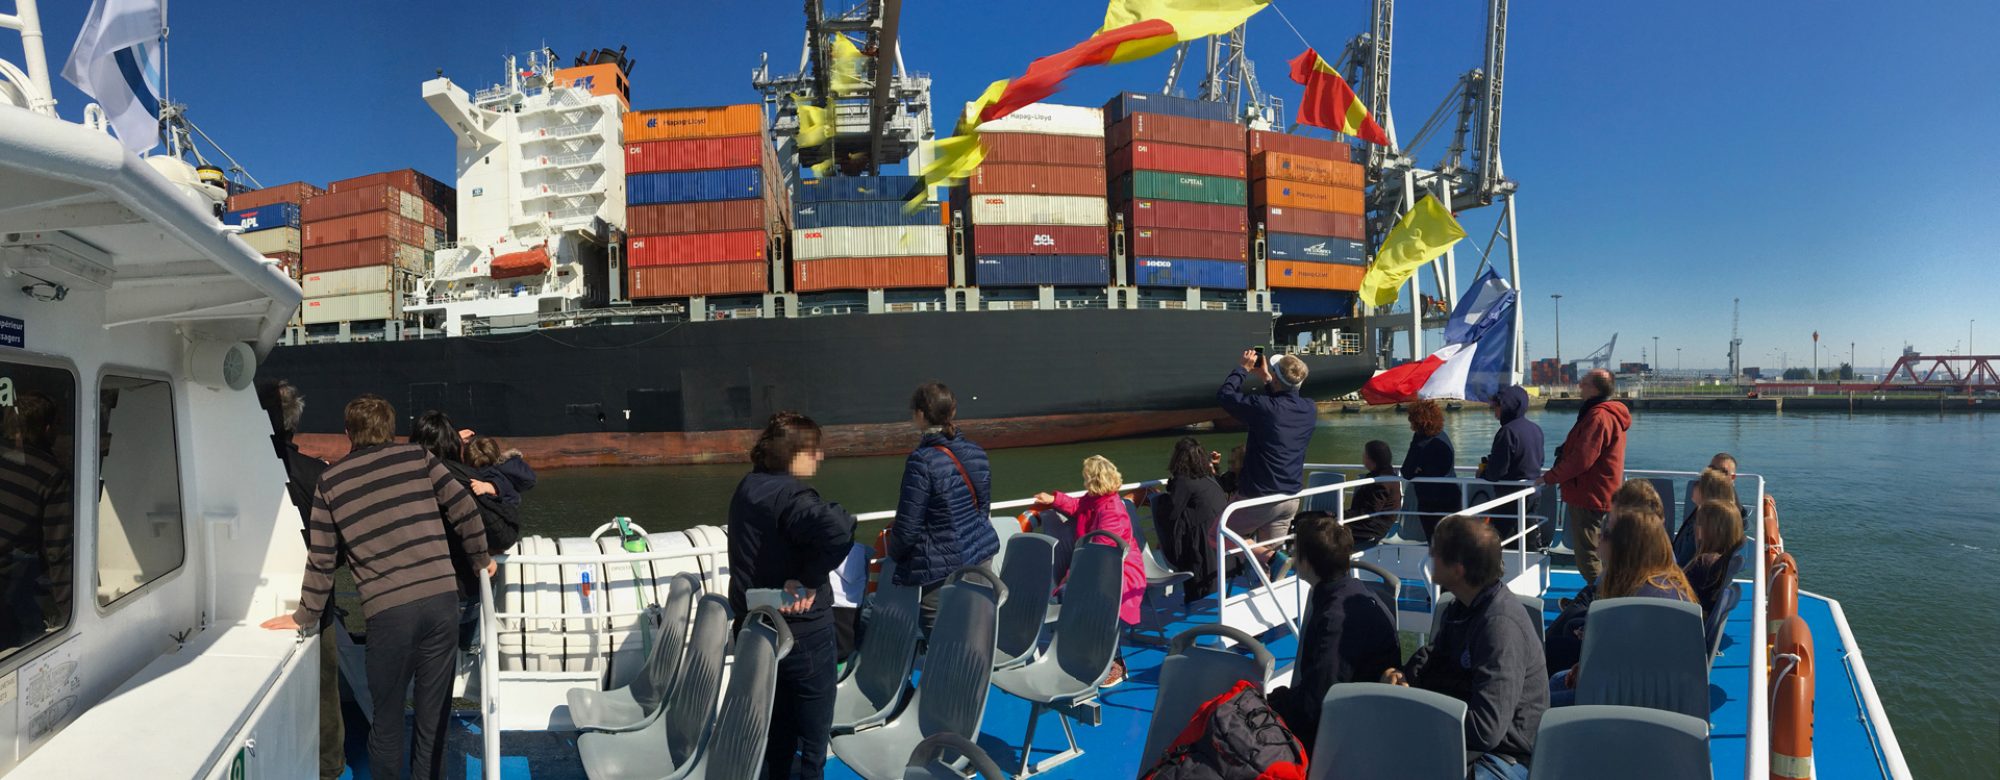 Visite du port du Havre en bateau près des porte conteneurs